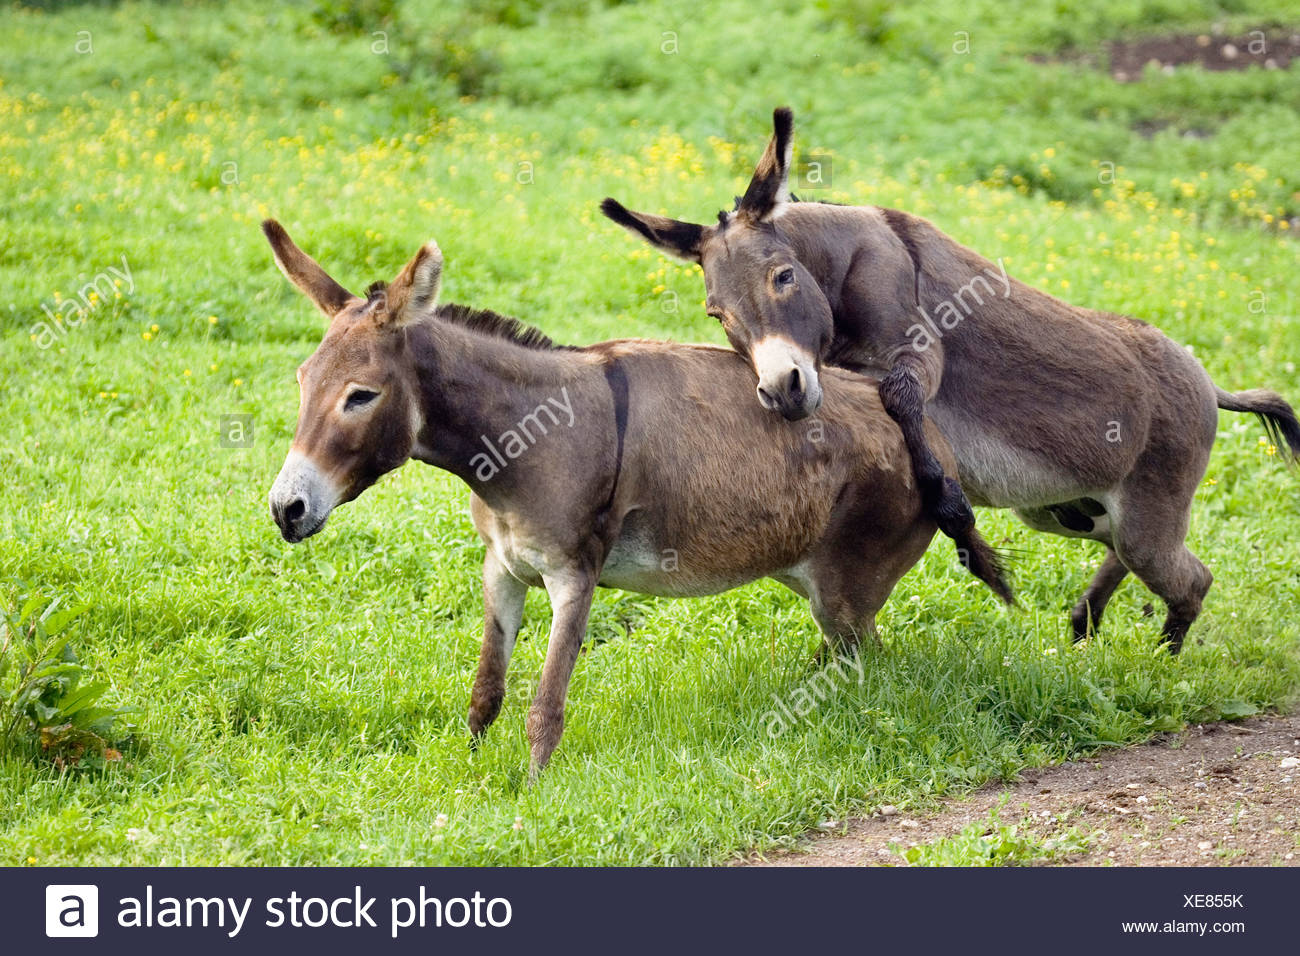 Donkeys Mating Stock Photos & Donkeys Mating Stock Images - Alamy.